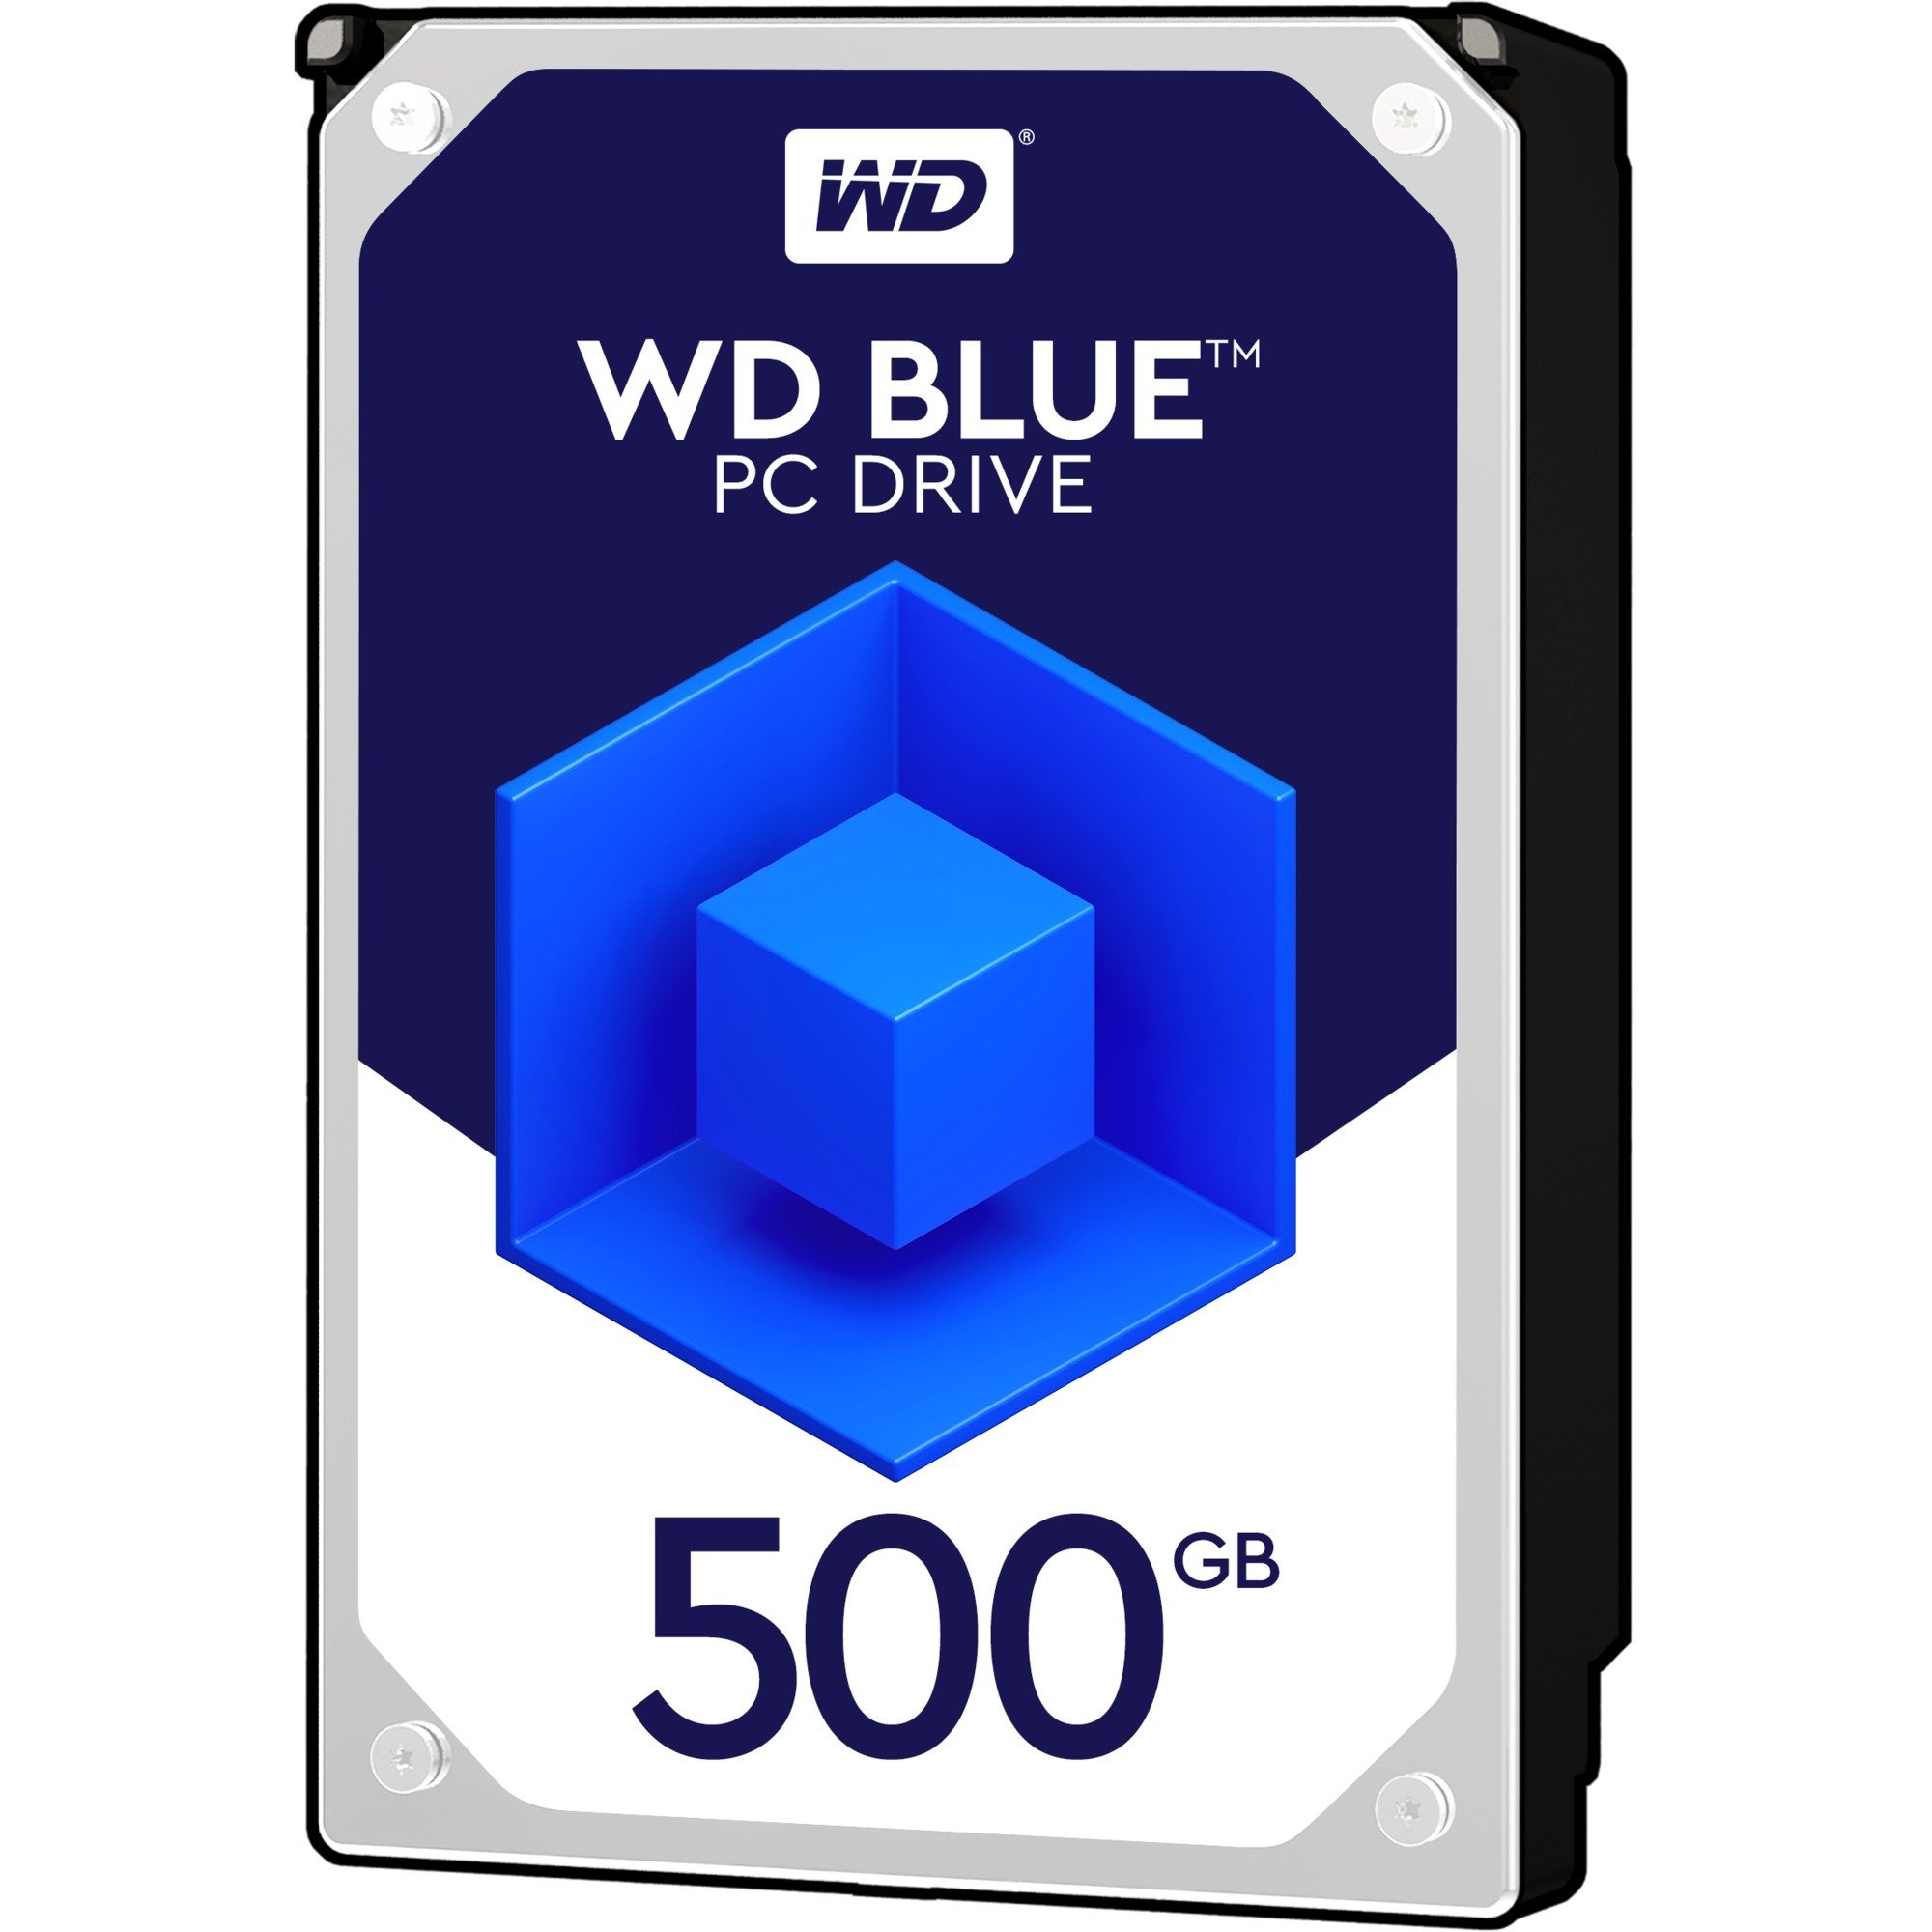 Image of Alternate - 500GB WD5000AZLX Blue, Festplatte online einkaufen bei Alternate